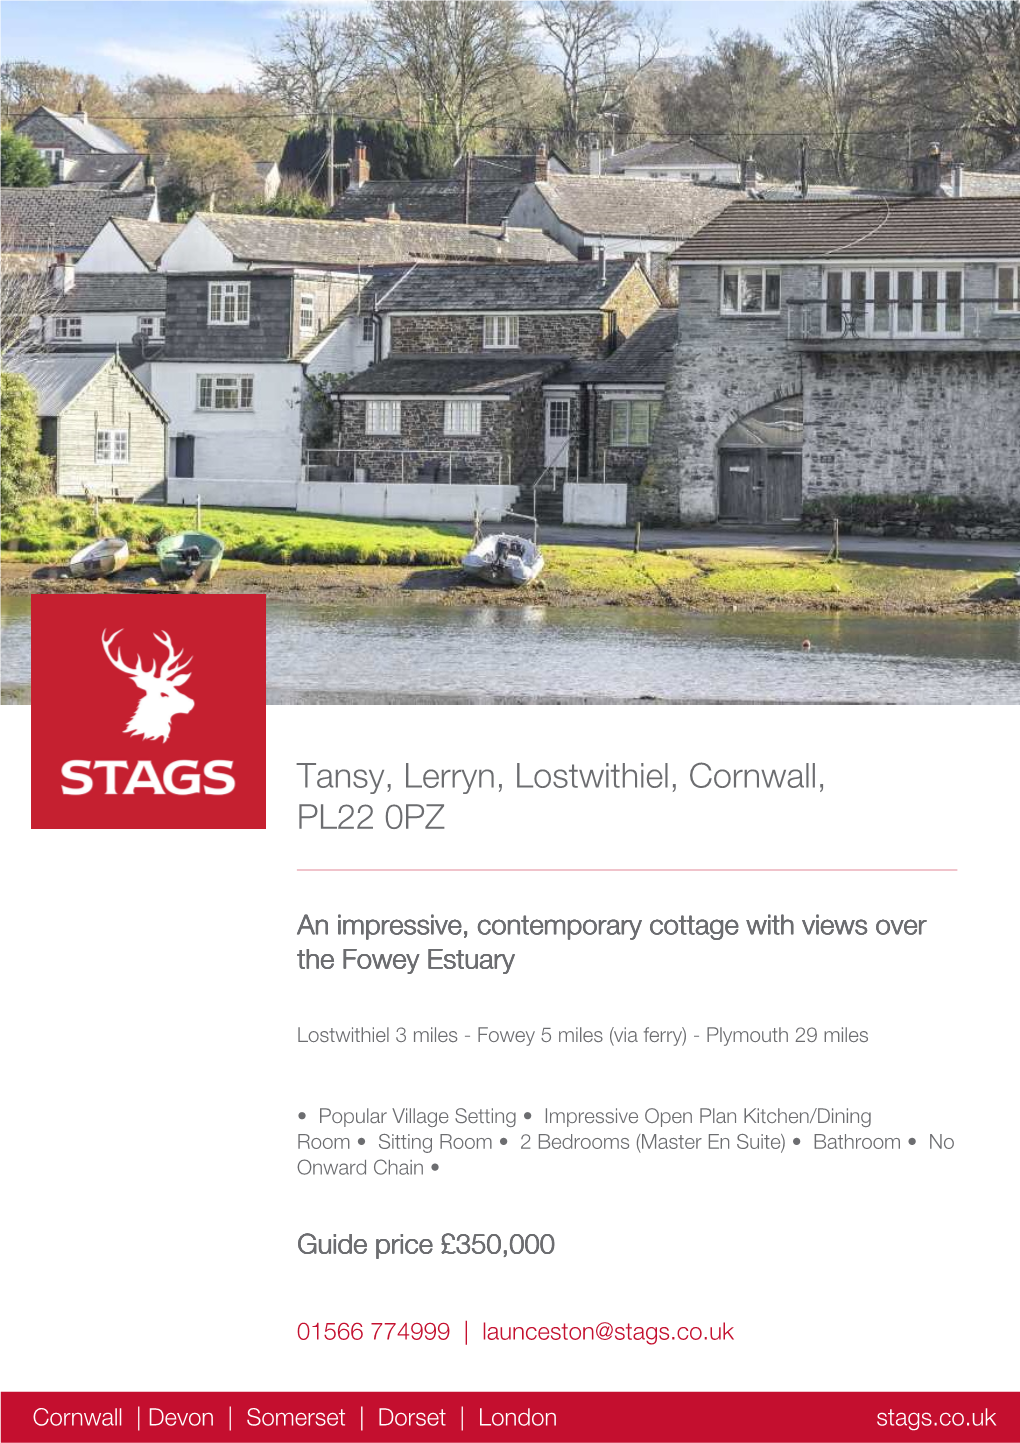 Tansy, Lerryn, Lostwithiel, Cornwall, PL22 0PZ